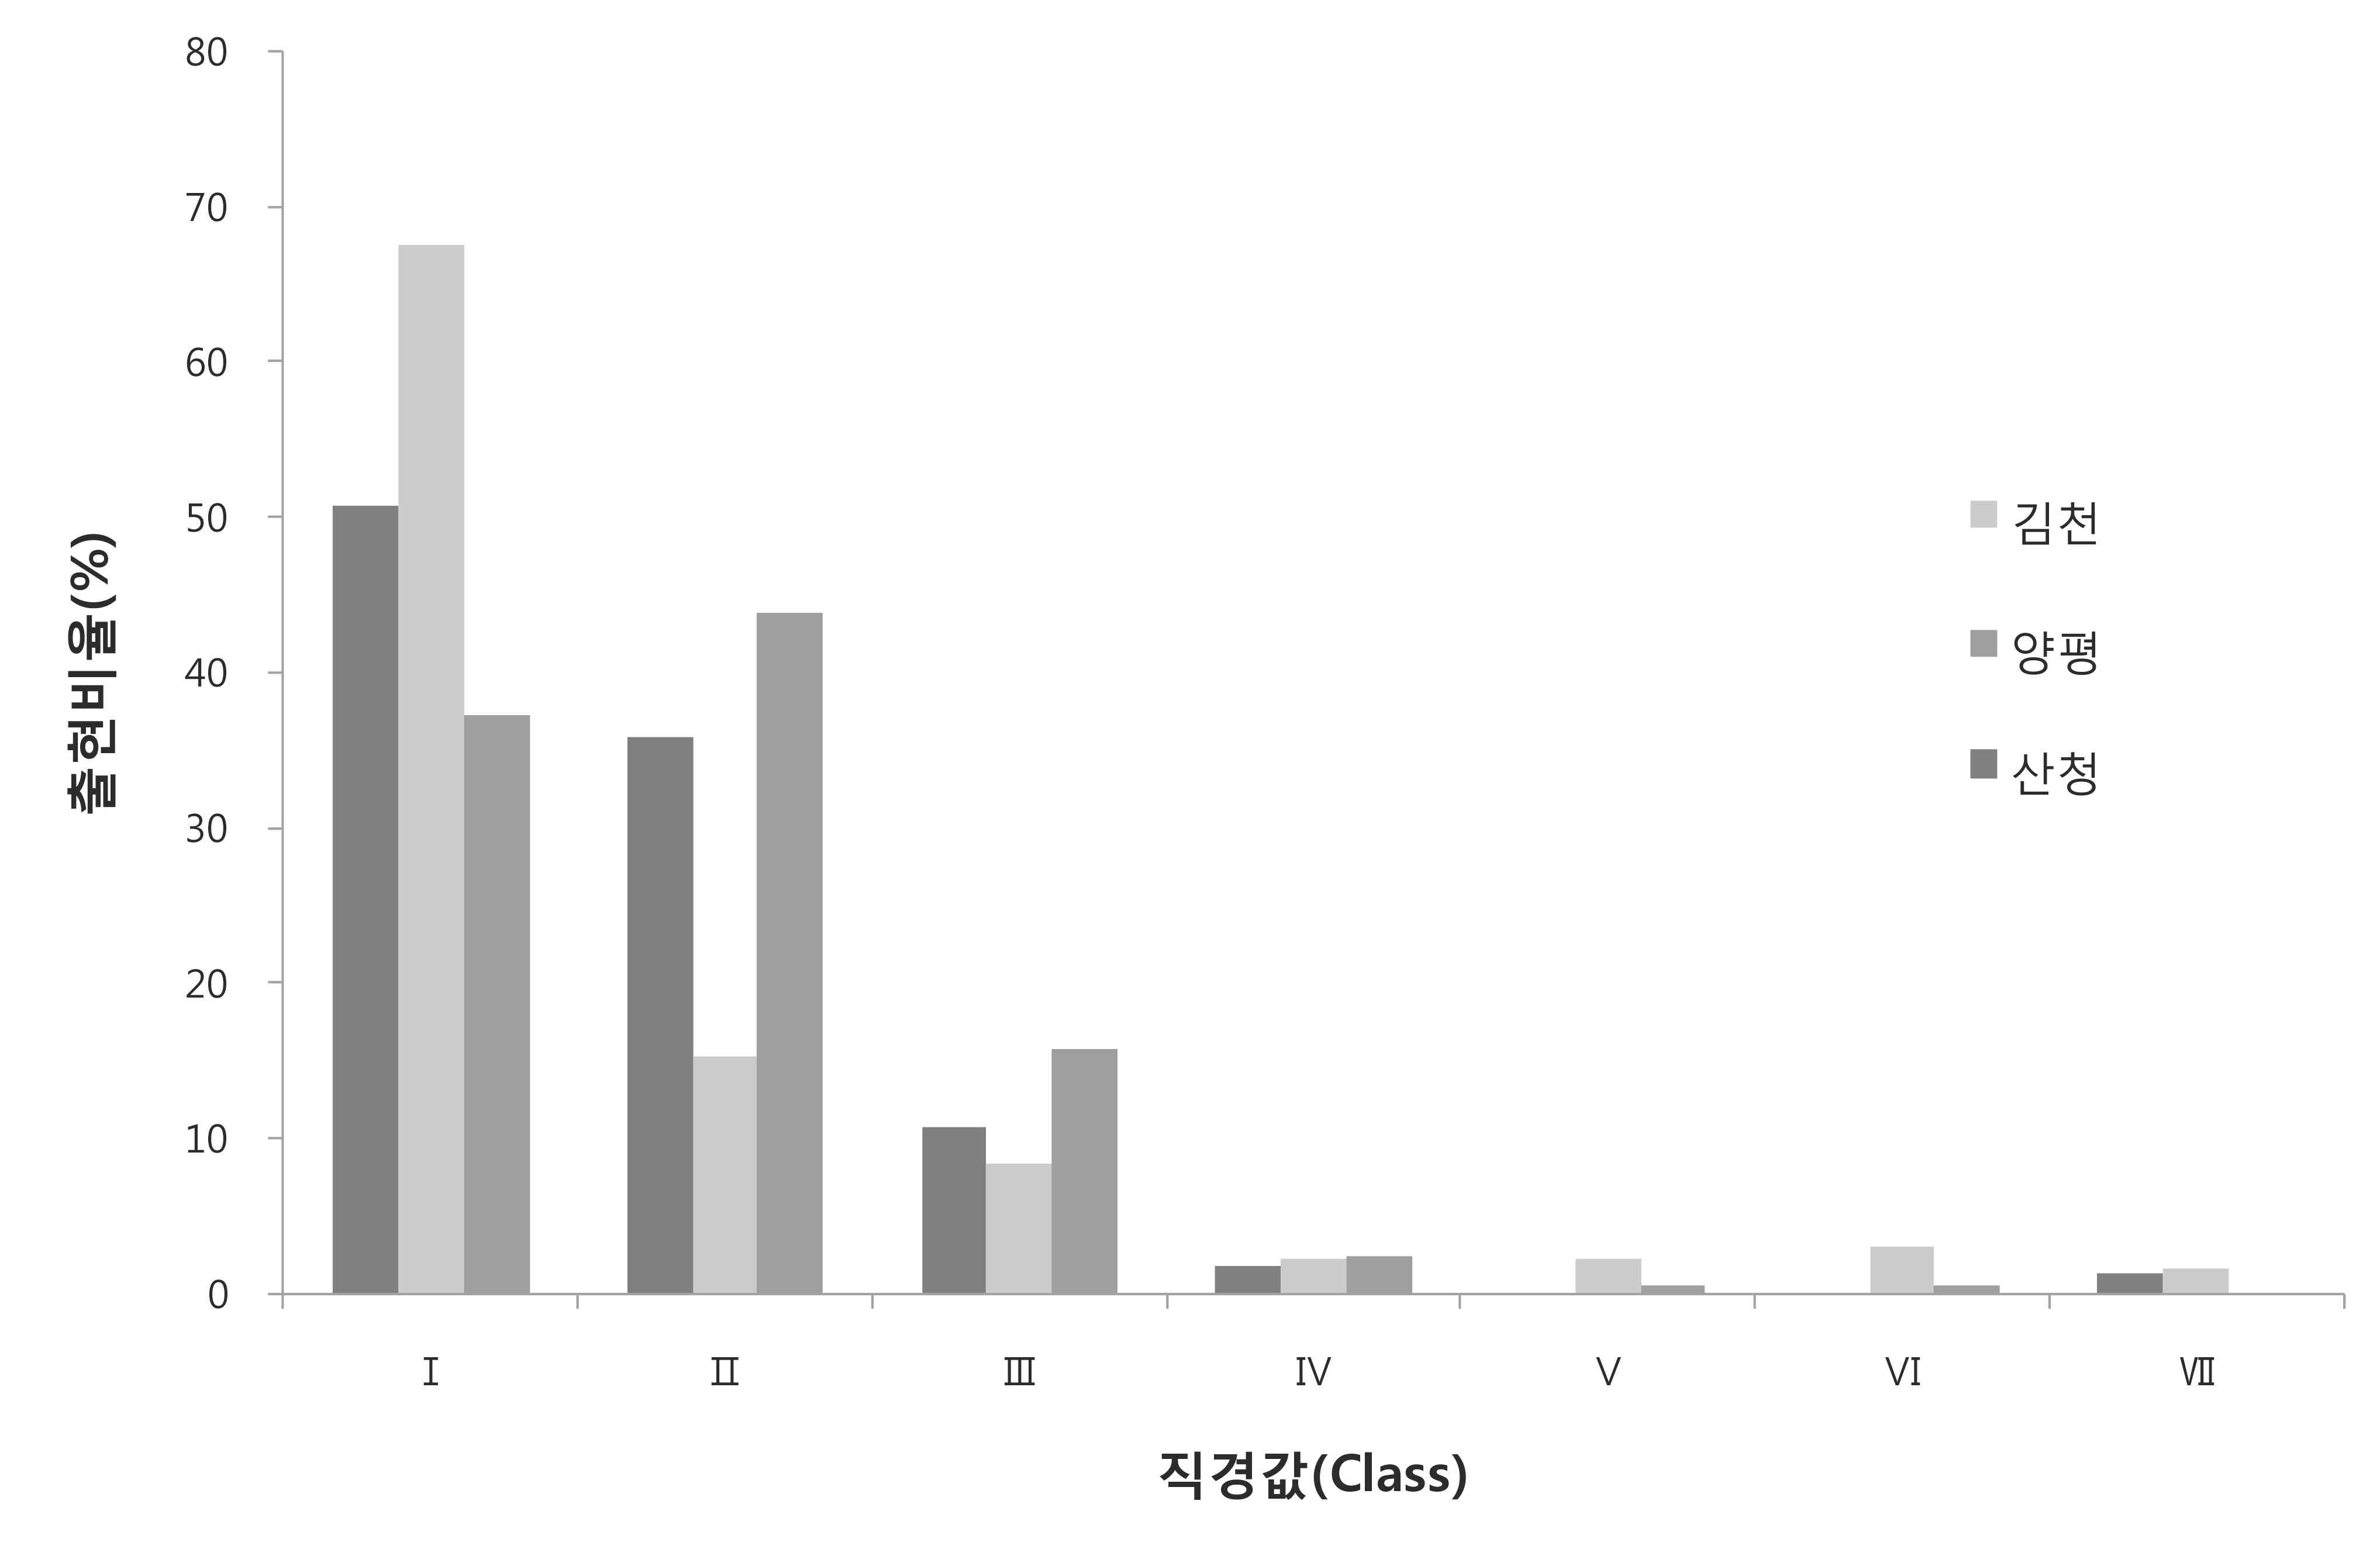 김천, 양평, 산청 조사지별 직경계급값(class)에 대한 출현비율